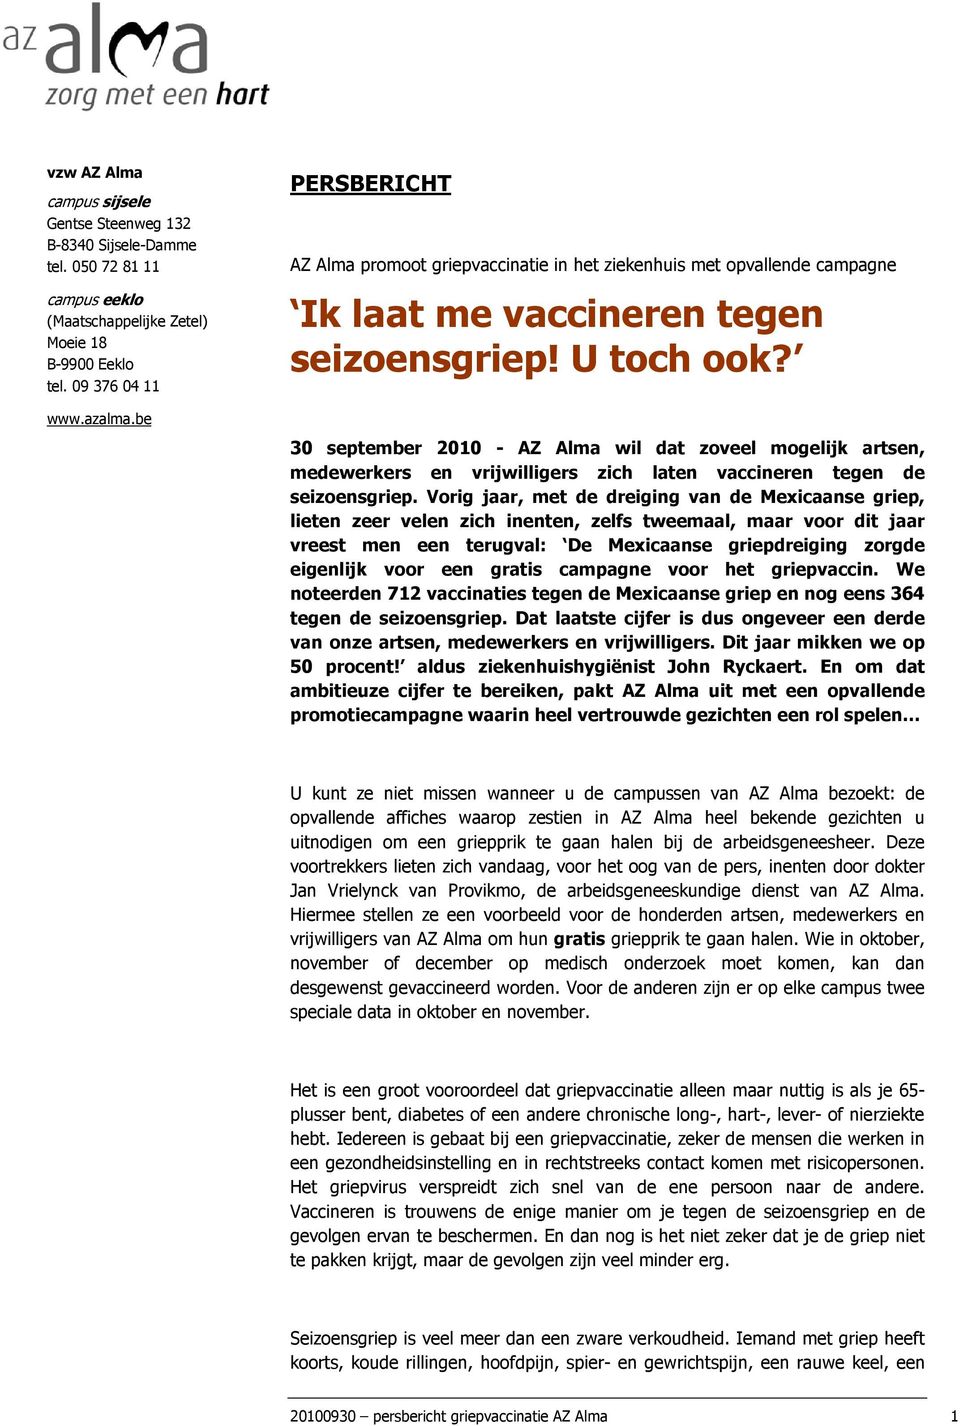 30 september 2010 - AZ Alma wil dat zoveel mogelijk artsen, medewerkers en vrijwilligers zich laten vaccineren tegen de seizoensgriep.